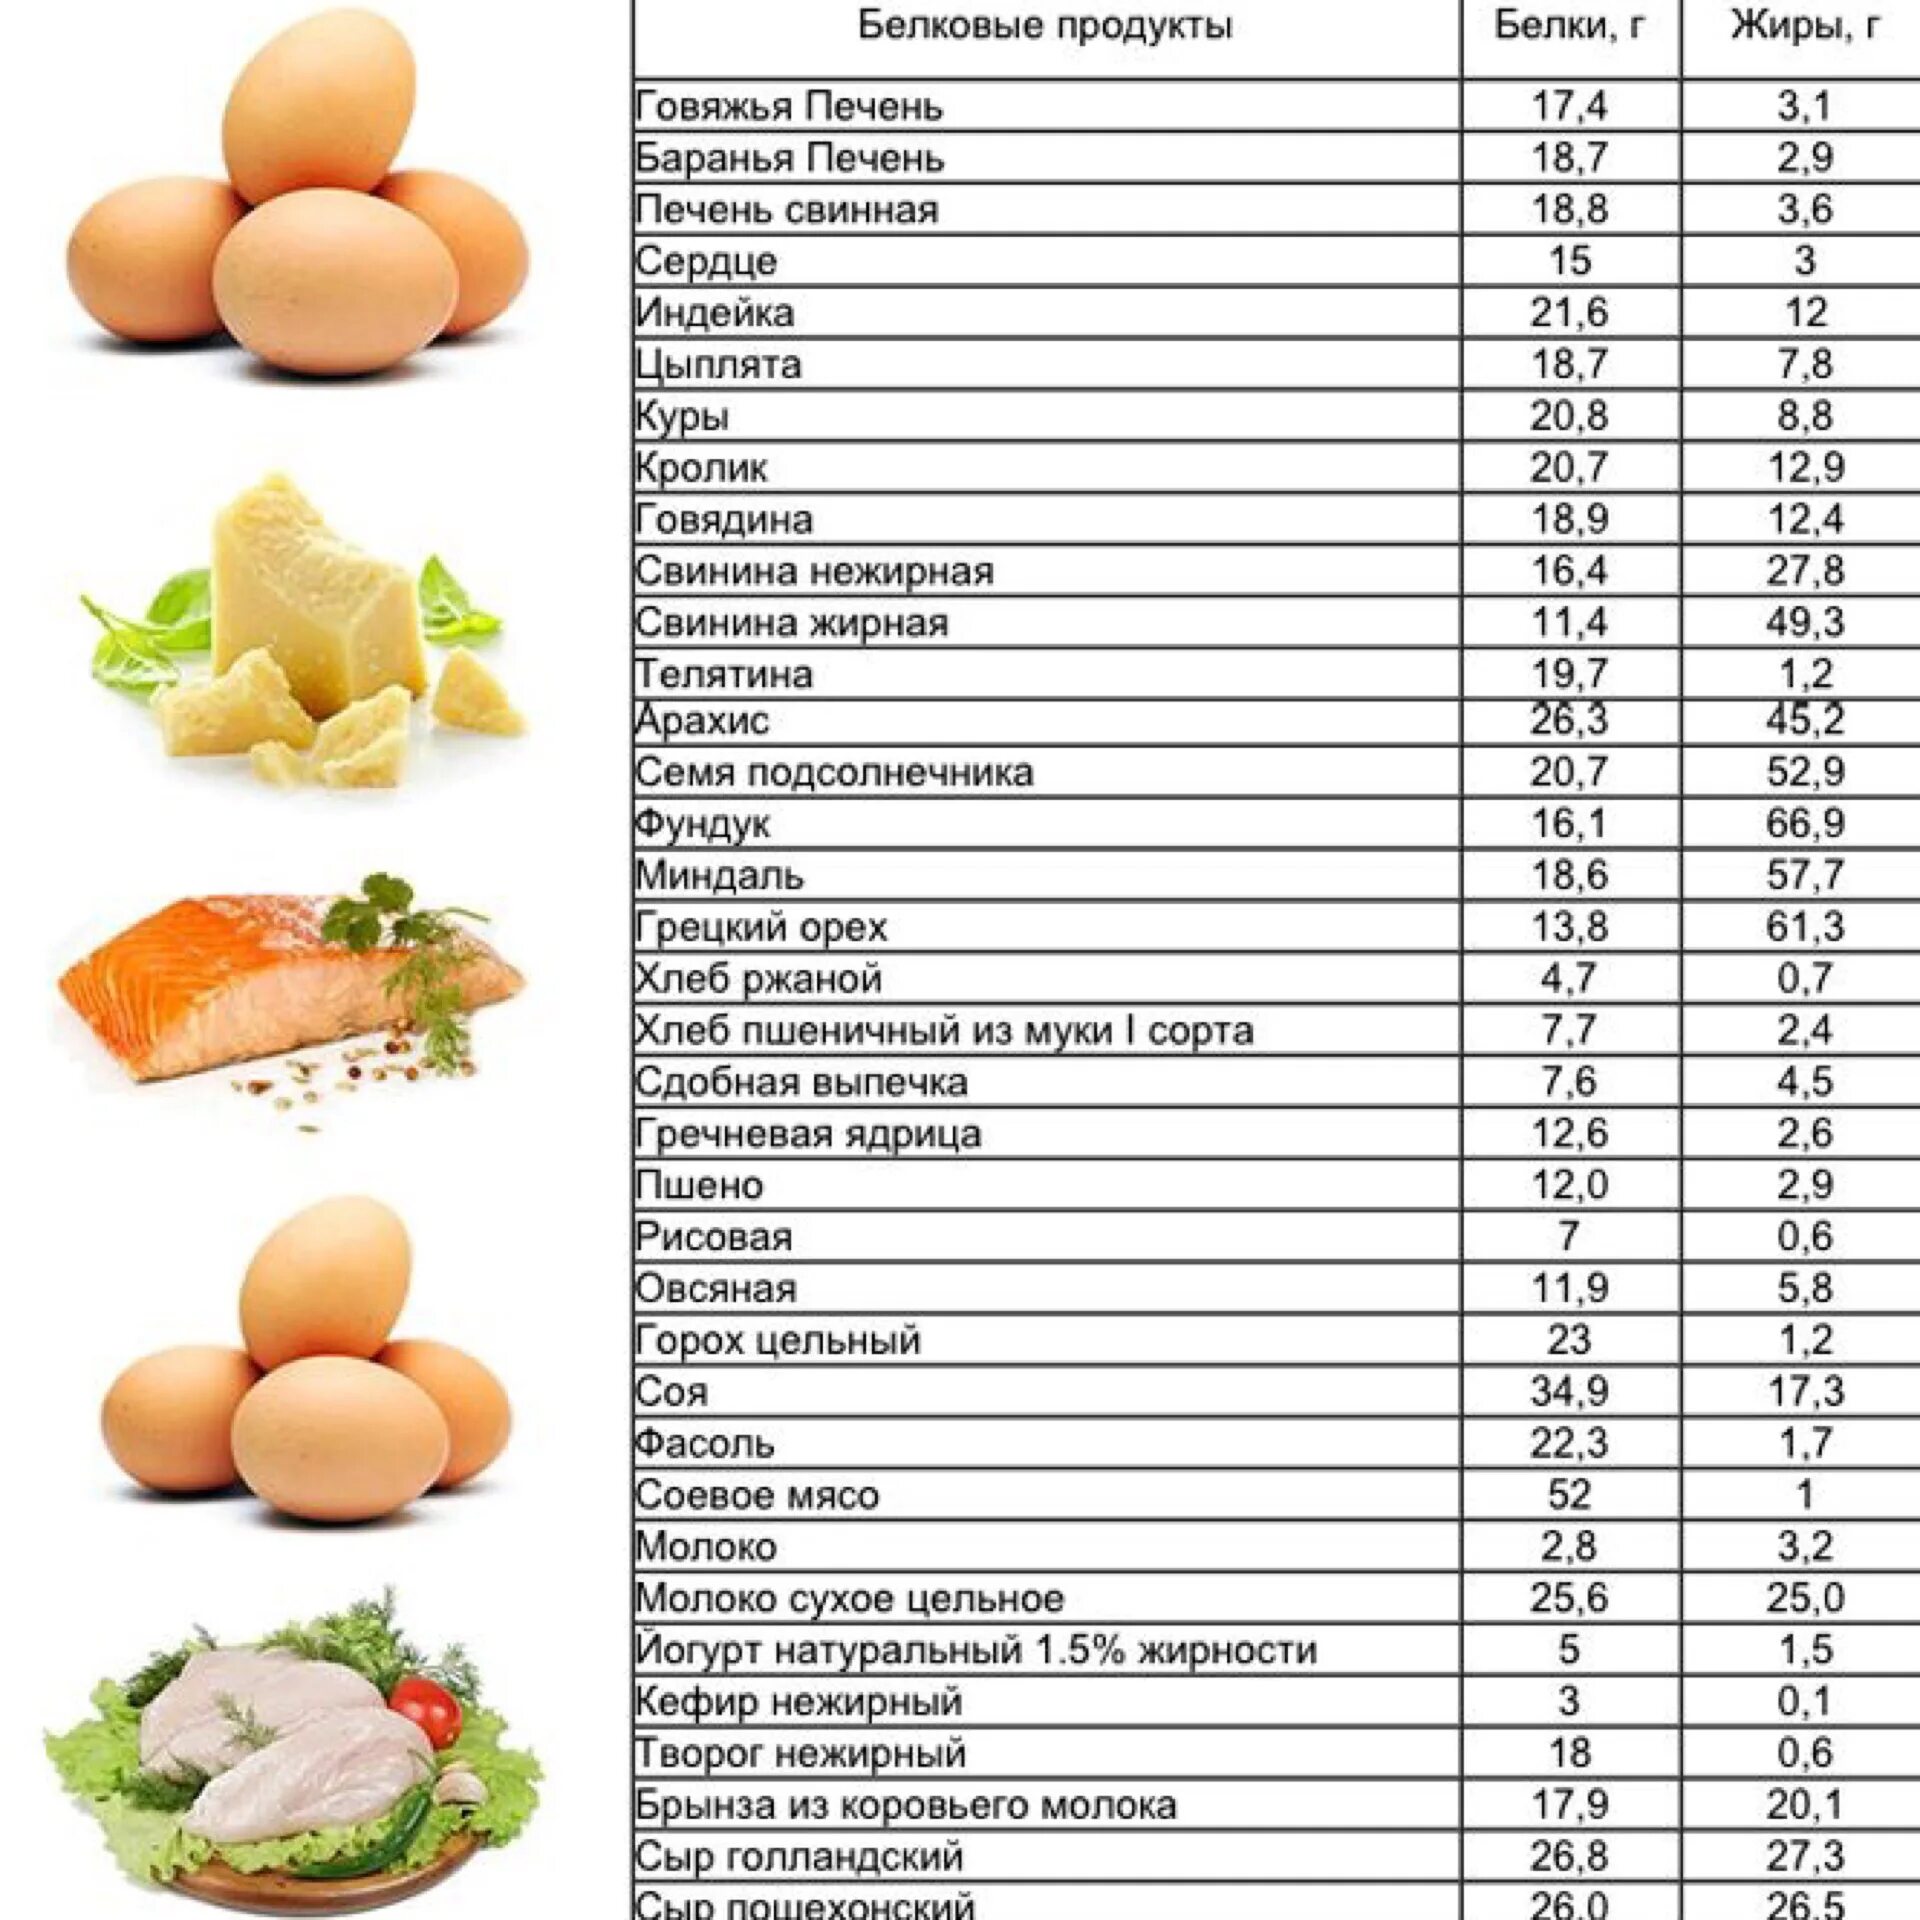 Сколько белка в сале. Продукты содержащие белок для похудения таблица список продуктов. Продукты богатые белком для похудения таблица список. Продукты богатые белком для похудения таблица список и блюда. Продукты богатые белком список продуктов таблица.